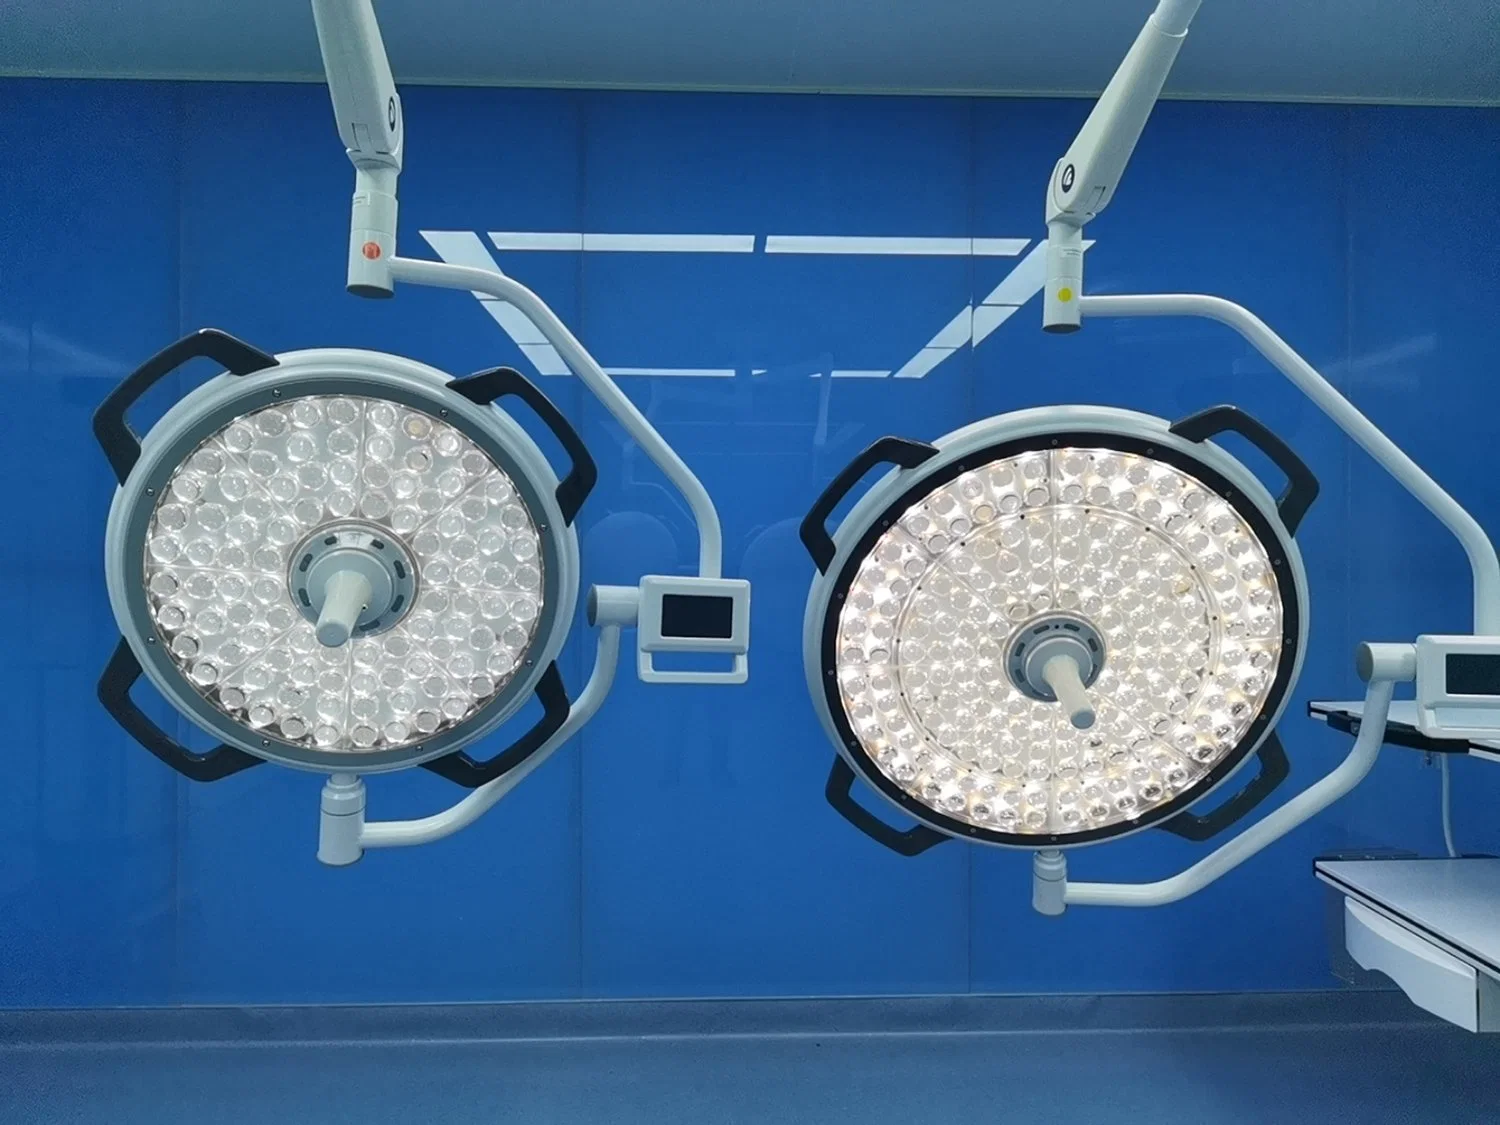 Lampe d'opération médicale Mt Medical LED Lampe médicale dentaire chirurgicale Plafonnier Lampe de fonctionnement sans ombre